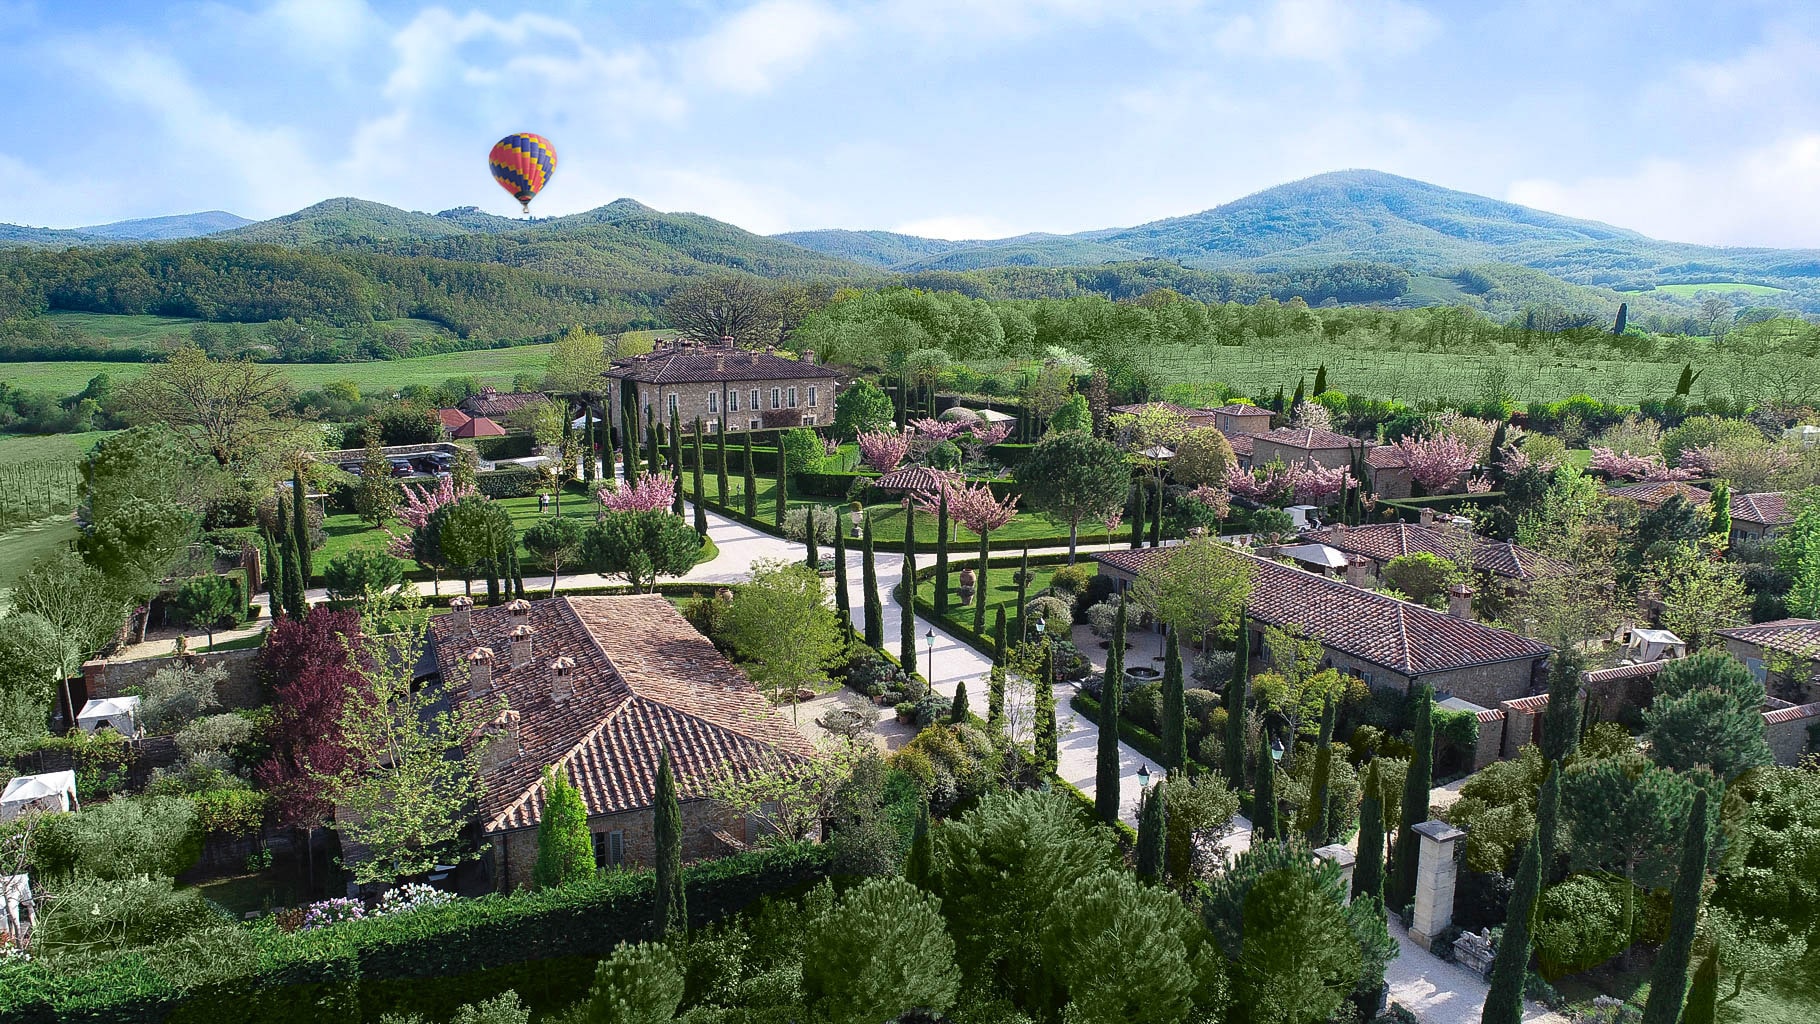 Hot air ballooning above Borgo Santo Pietro estate